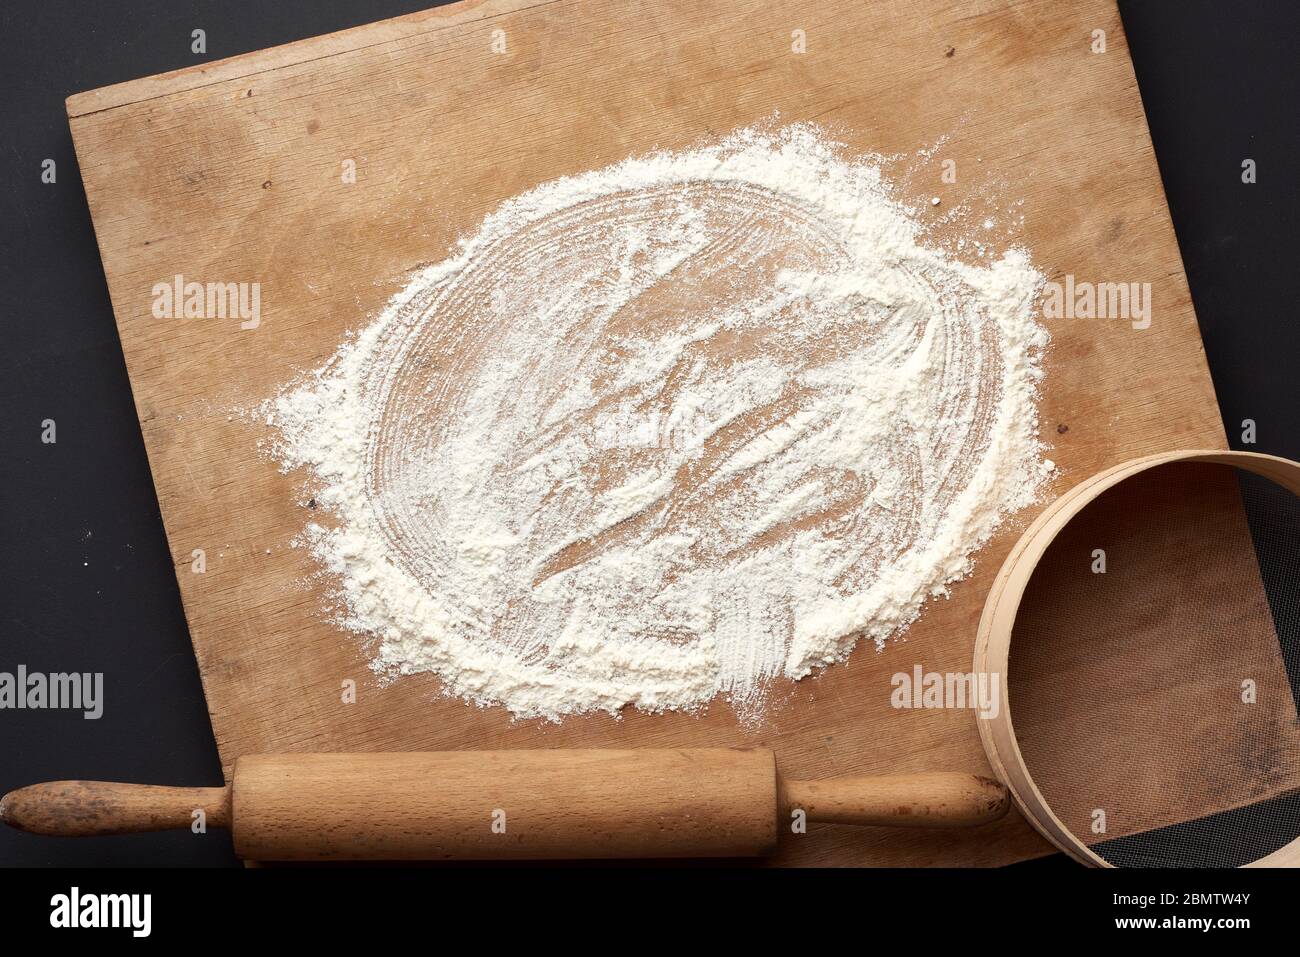 Weißes Weizenmehl verstreut und ein Holz-Nudelholz, rundes Sieb auf einem schwarzen Tisch, Draufsicht Stockfoto